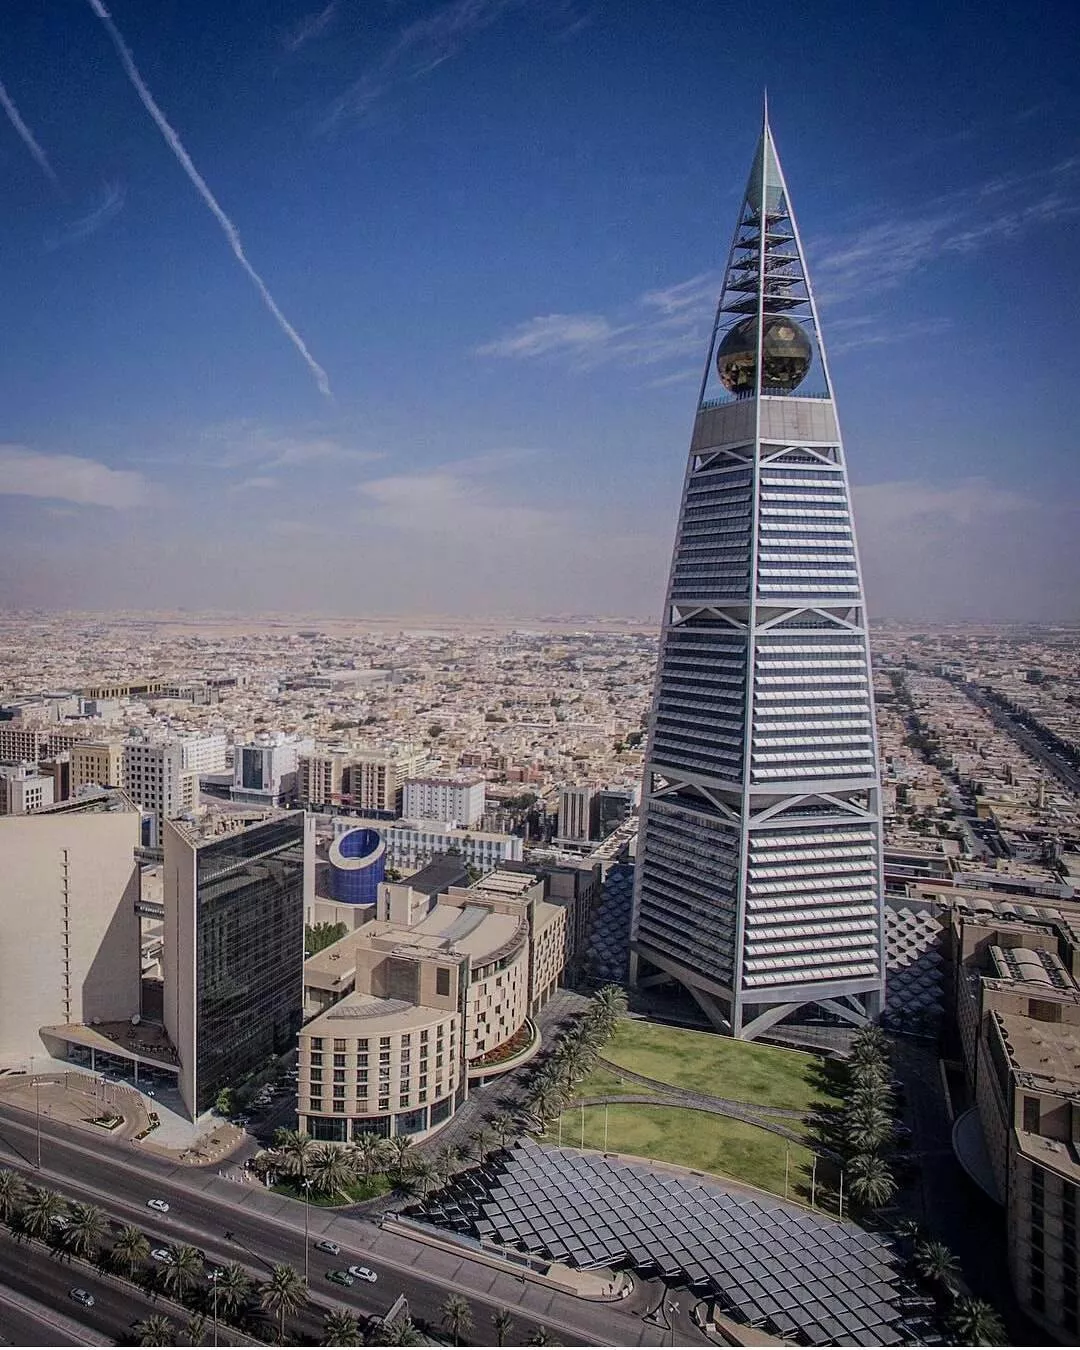 السياحة في السعودية: خوضي تجربة التسوّق وزيارة المطاعم في أعلى الأبنية في العالم، برج الفيصلية